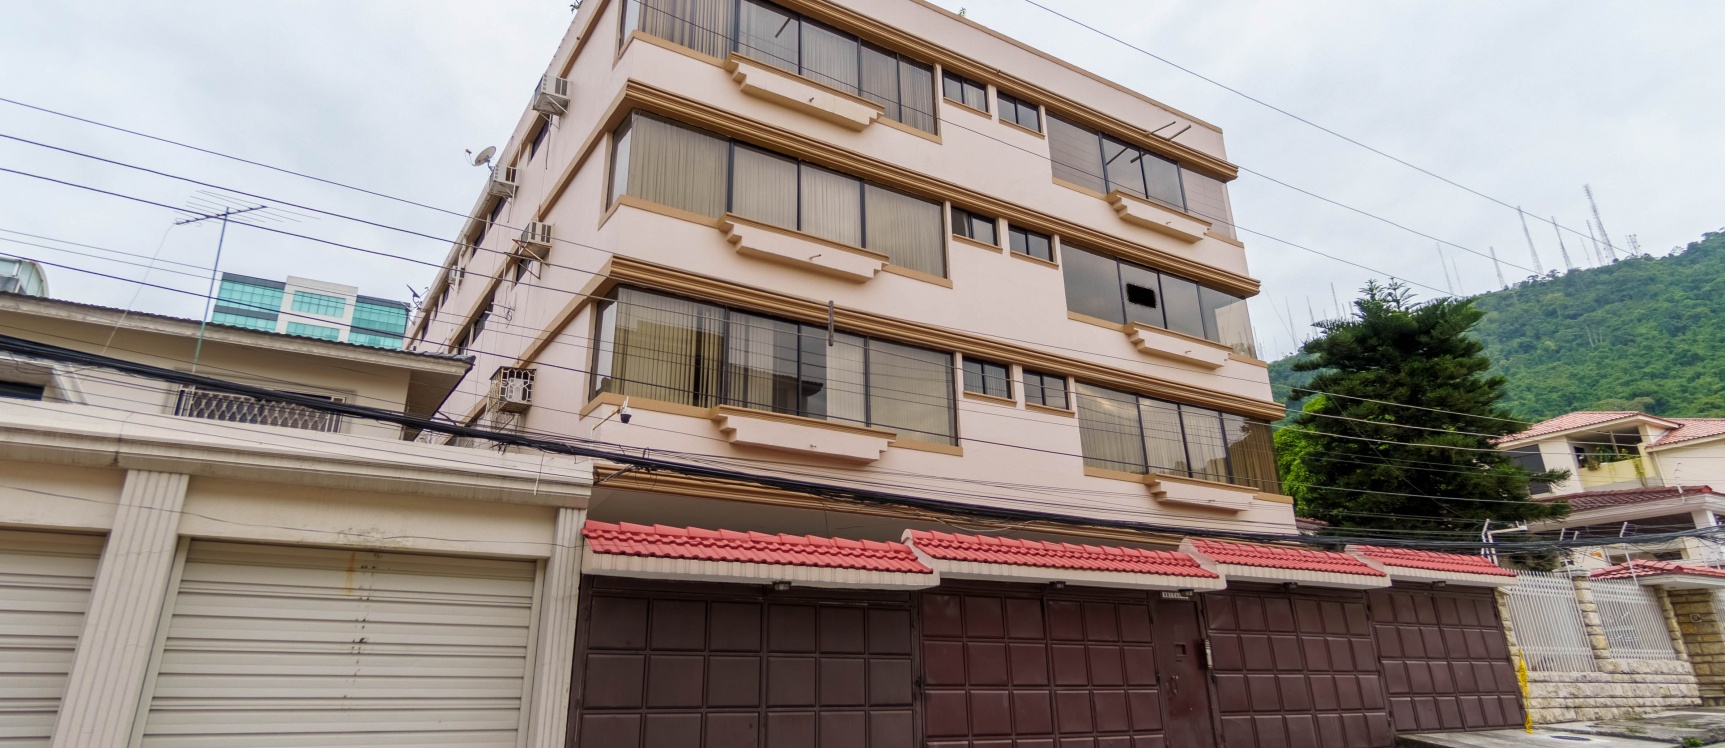 GeoBienes - Departamento en alquiler ubicado en Urabnización Santa Cecilia, Los Ceibos - Plusvalia Guayaquil Casas de venta y alquiler Inmobiliaria Ecuador